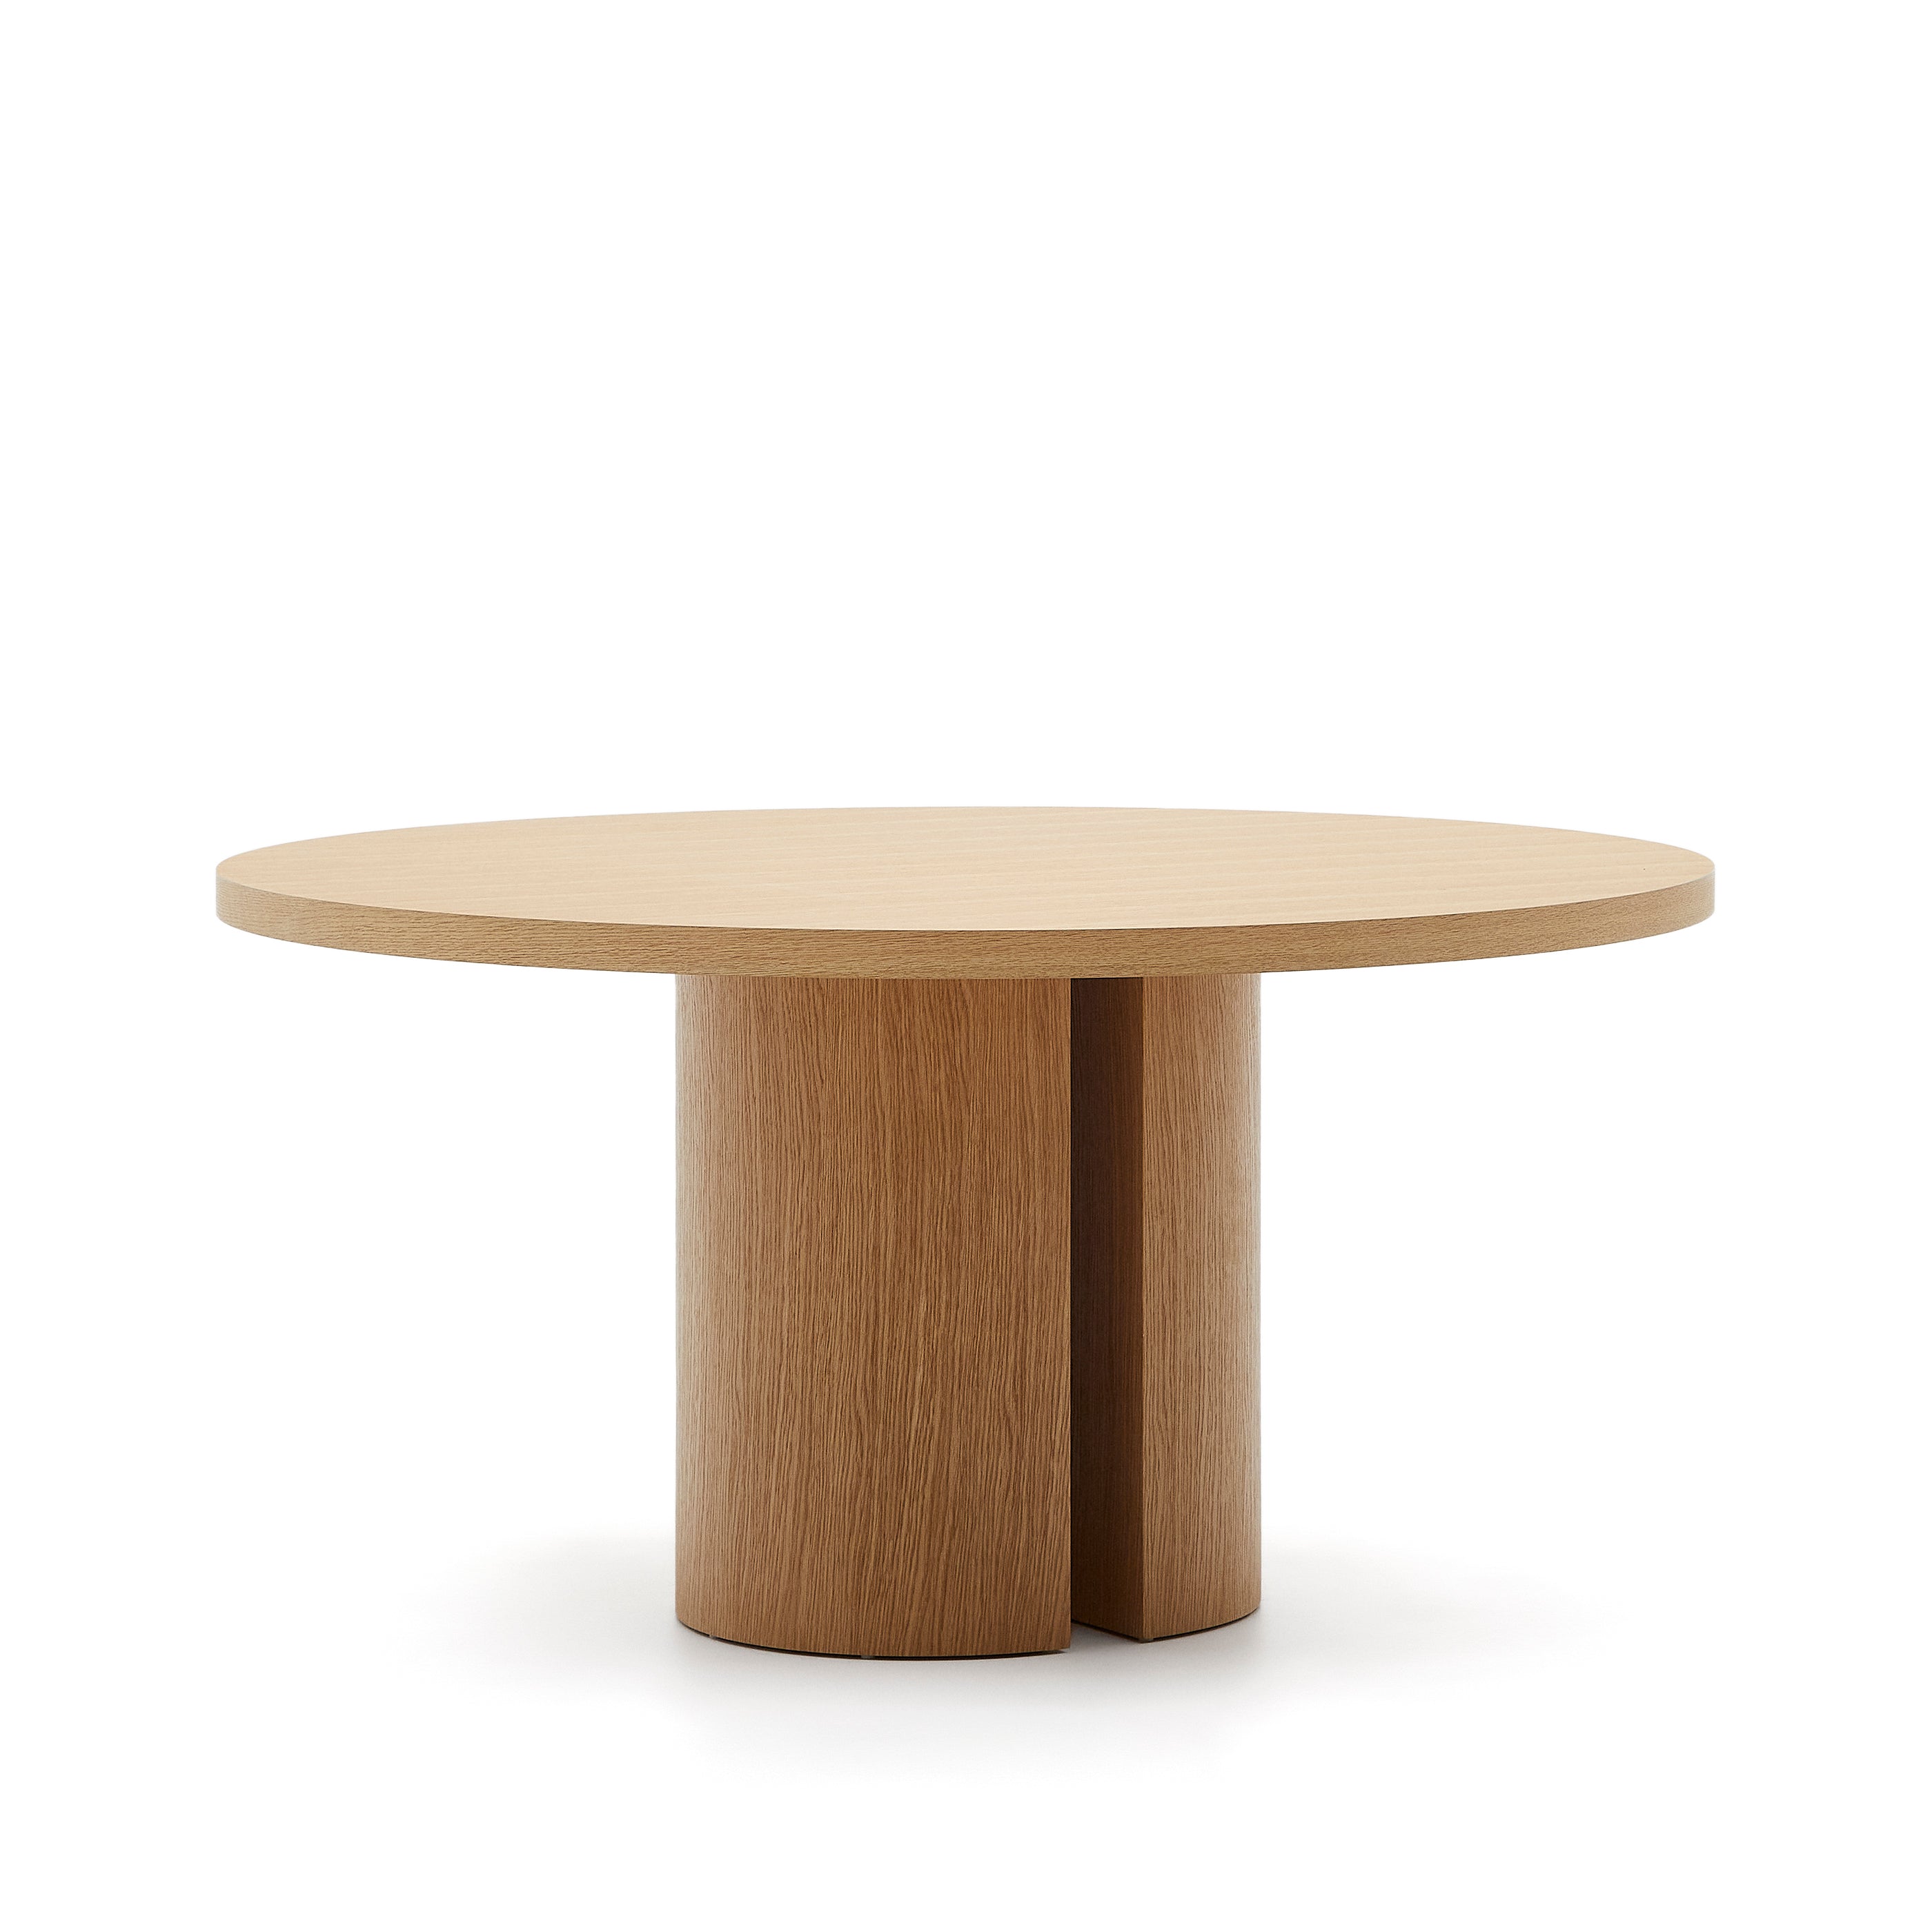 Nealy asztal tölgy furnérrel természetes befejezéssel, Ø 150 cm